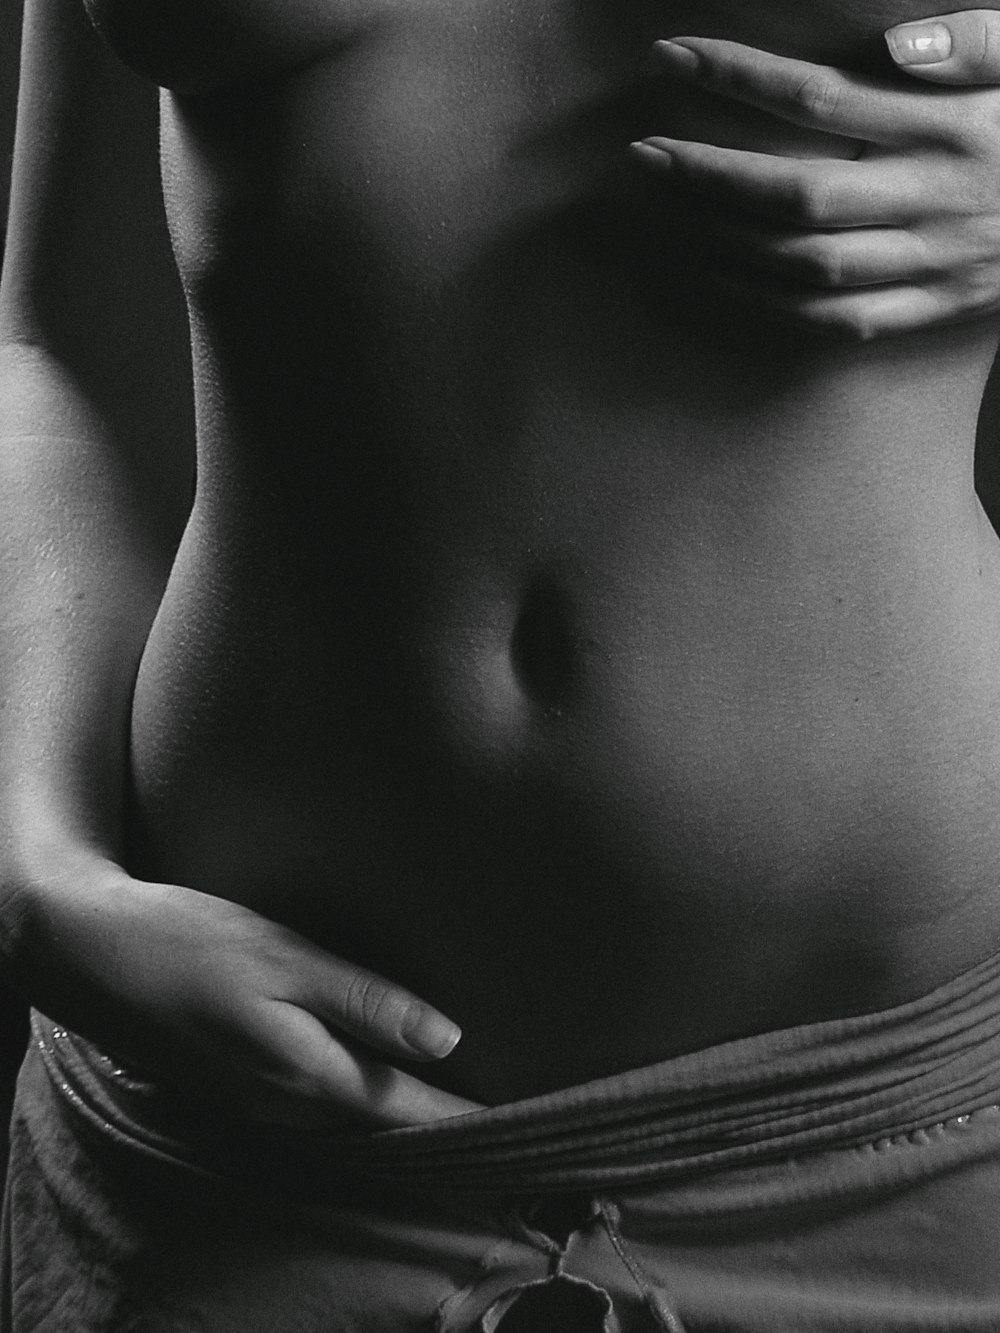 uma foto em preto e branco do estômago de uma mulher